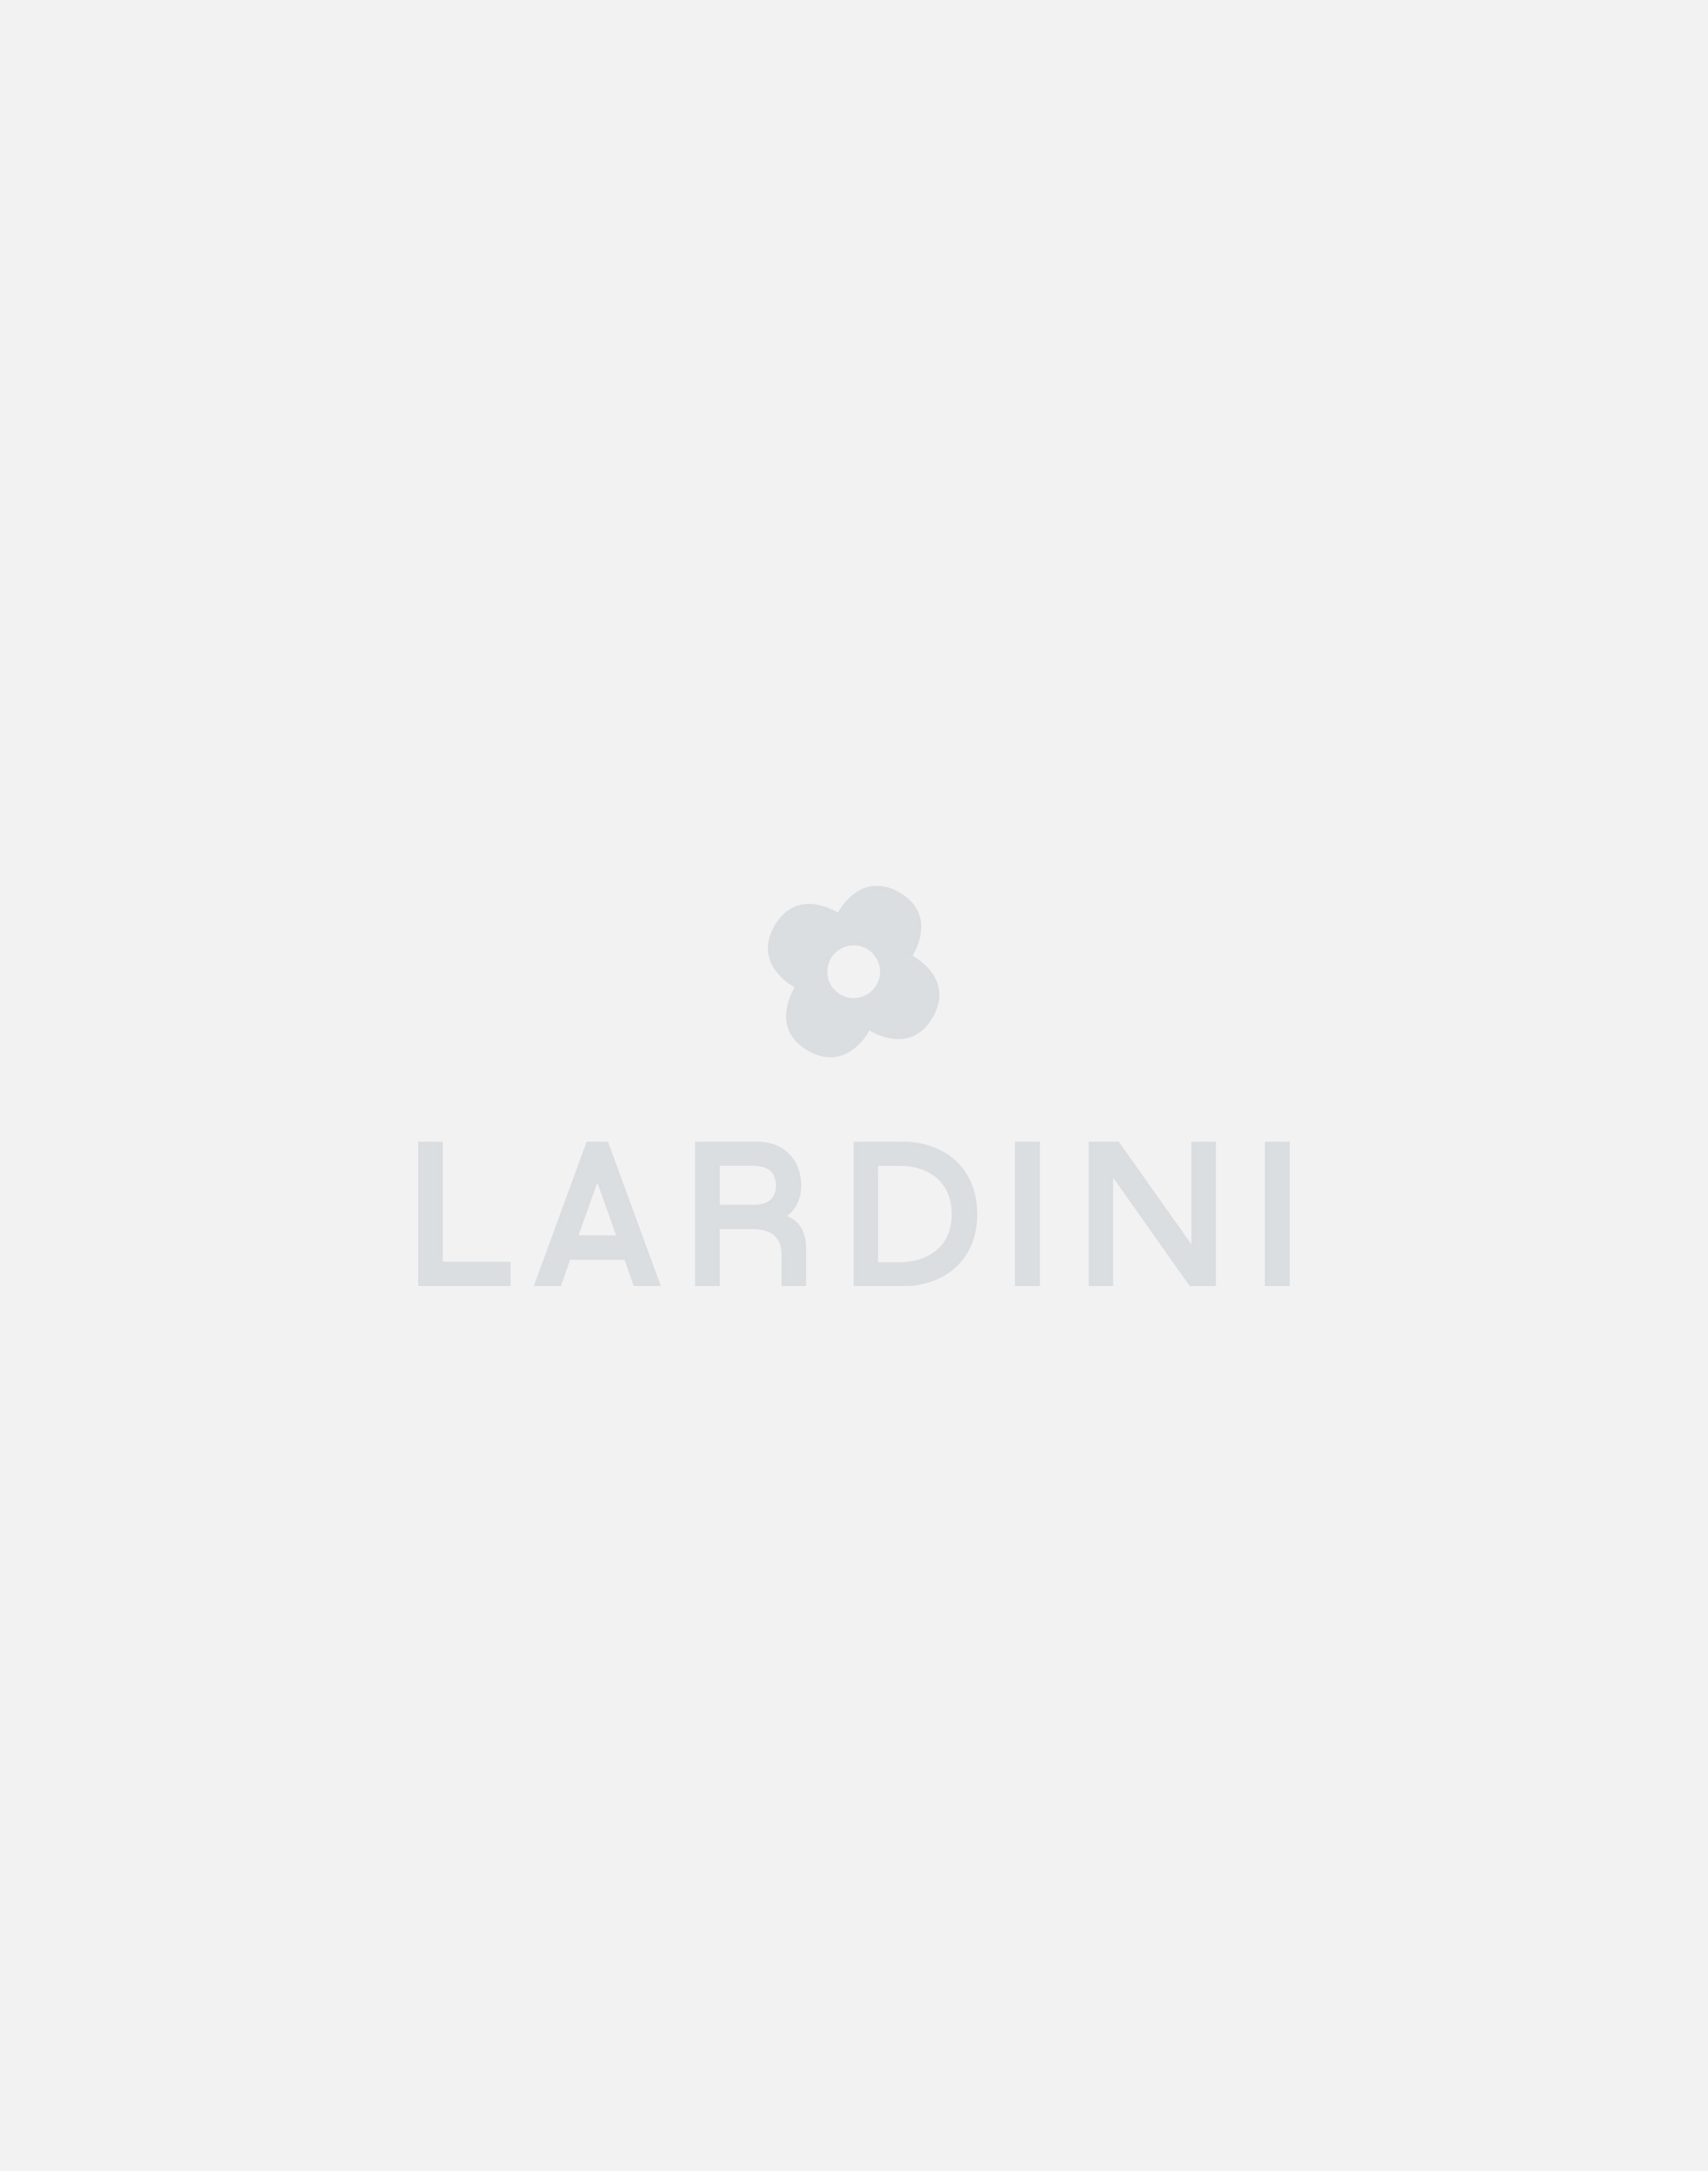 Cream knit jacket - Luigi Lardini capsule 2